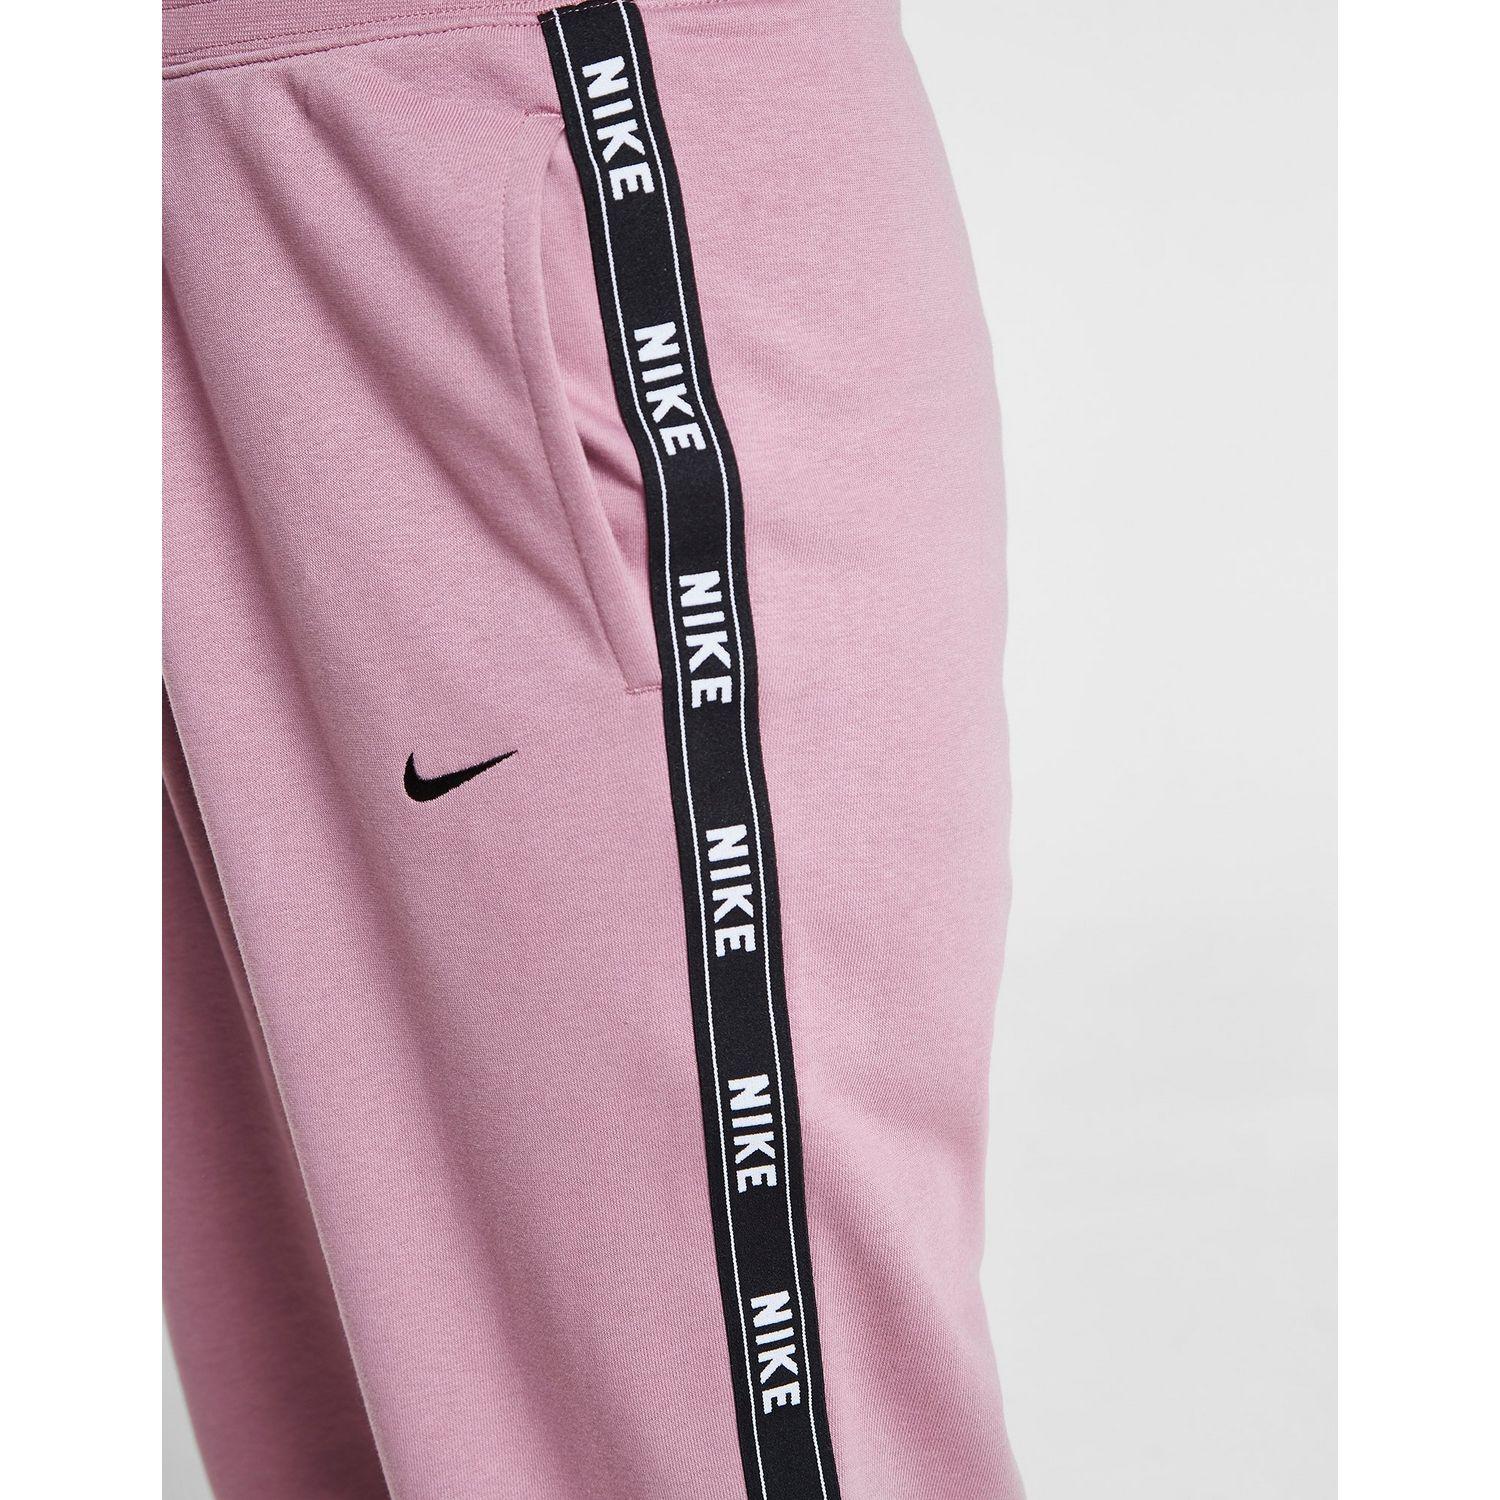 Nike Tape Fleece Joggers in Pink/Black (Pink) - Lyst